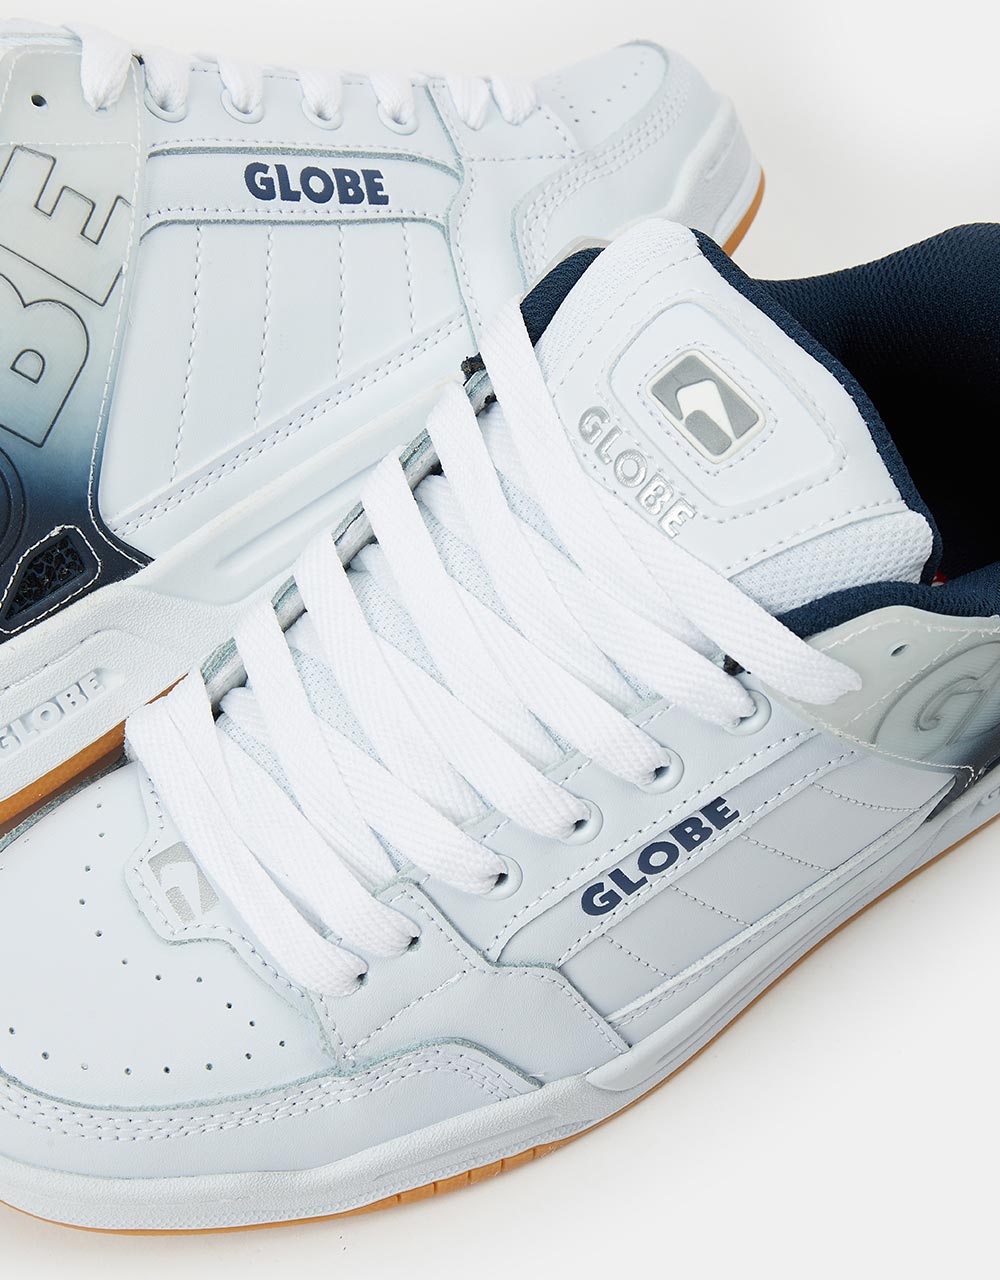 Globe Tilt Skate Shoes - White/Blue Stipple